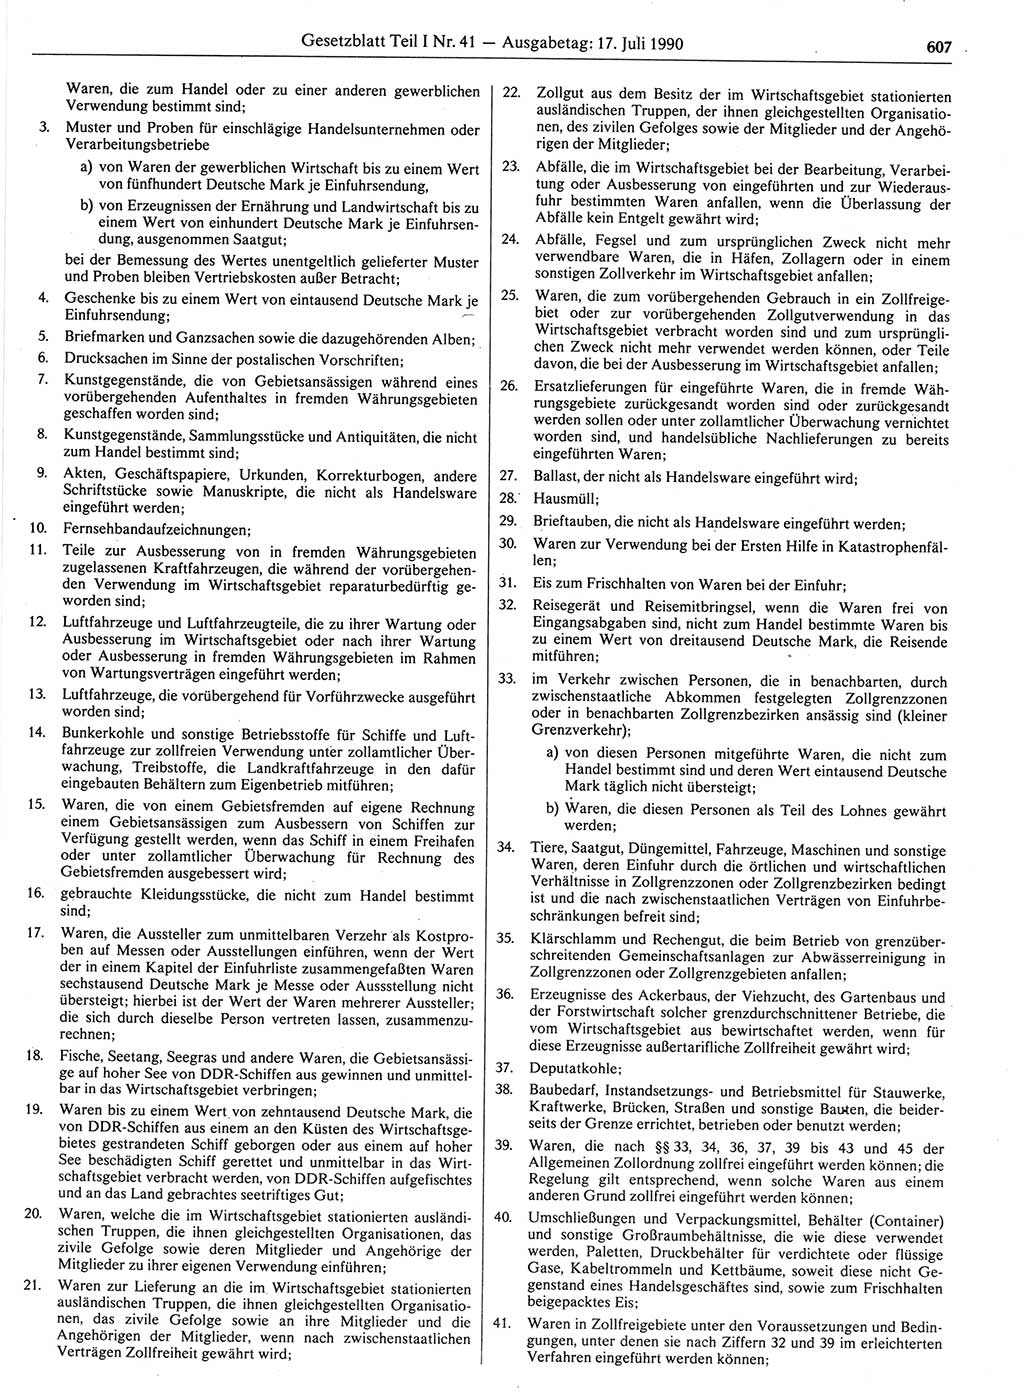 Gesetzblatt (GBl.) der Deutschen Demokratischen Republik (DDR) Teil Ⅰ 1990, Seite 607 (GBl. DDR Ⅰ 1990, S. 607)